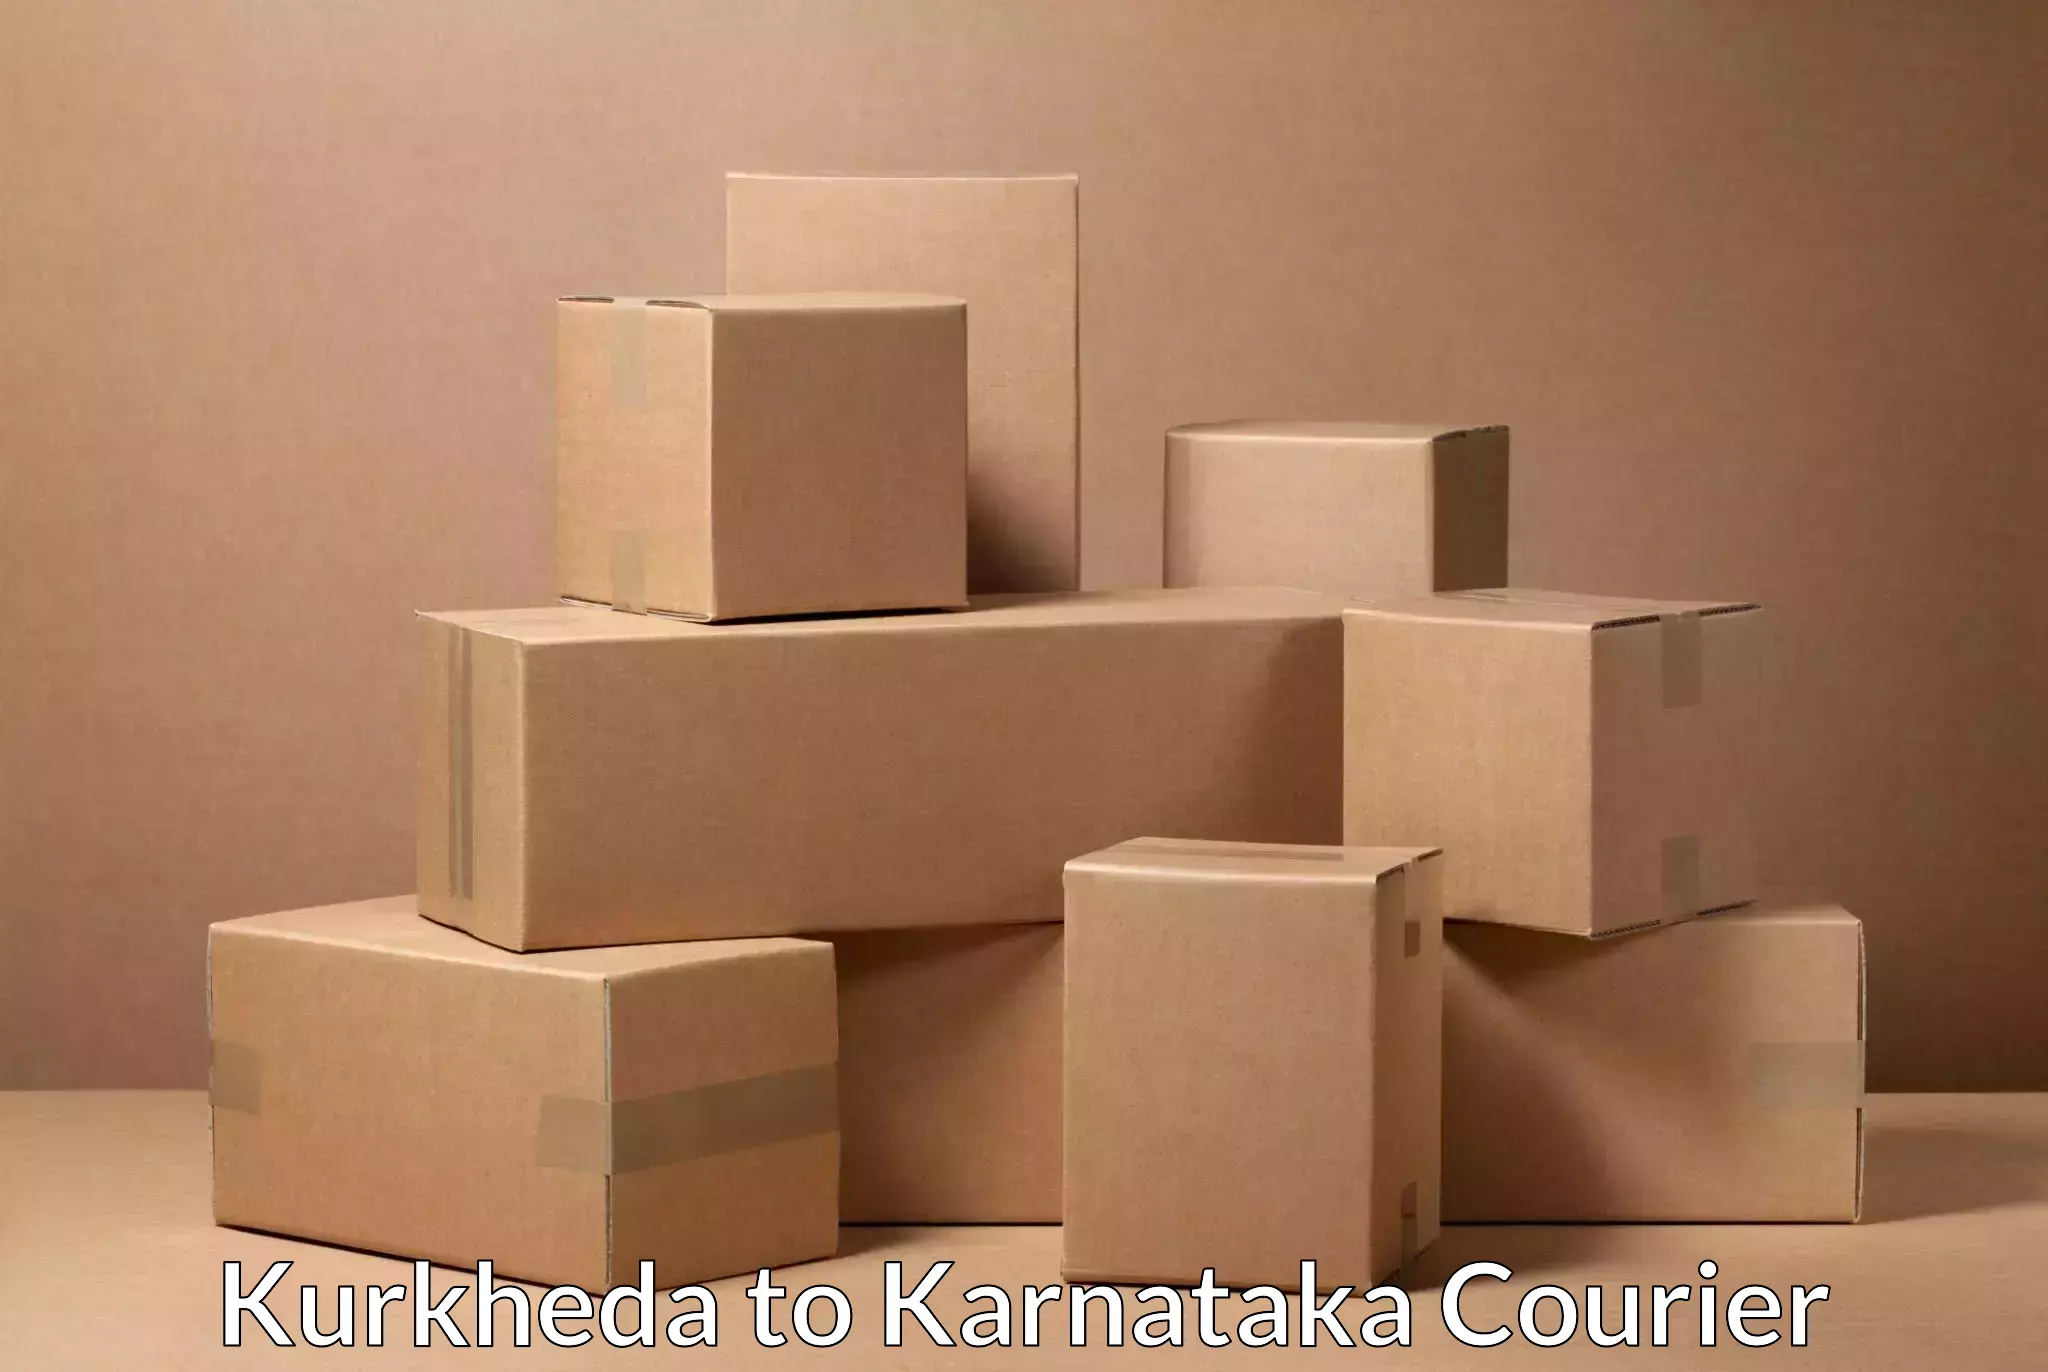 Quality courier partnerships Kurkheda to Yenepoya Mangalore